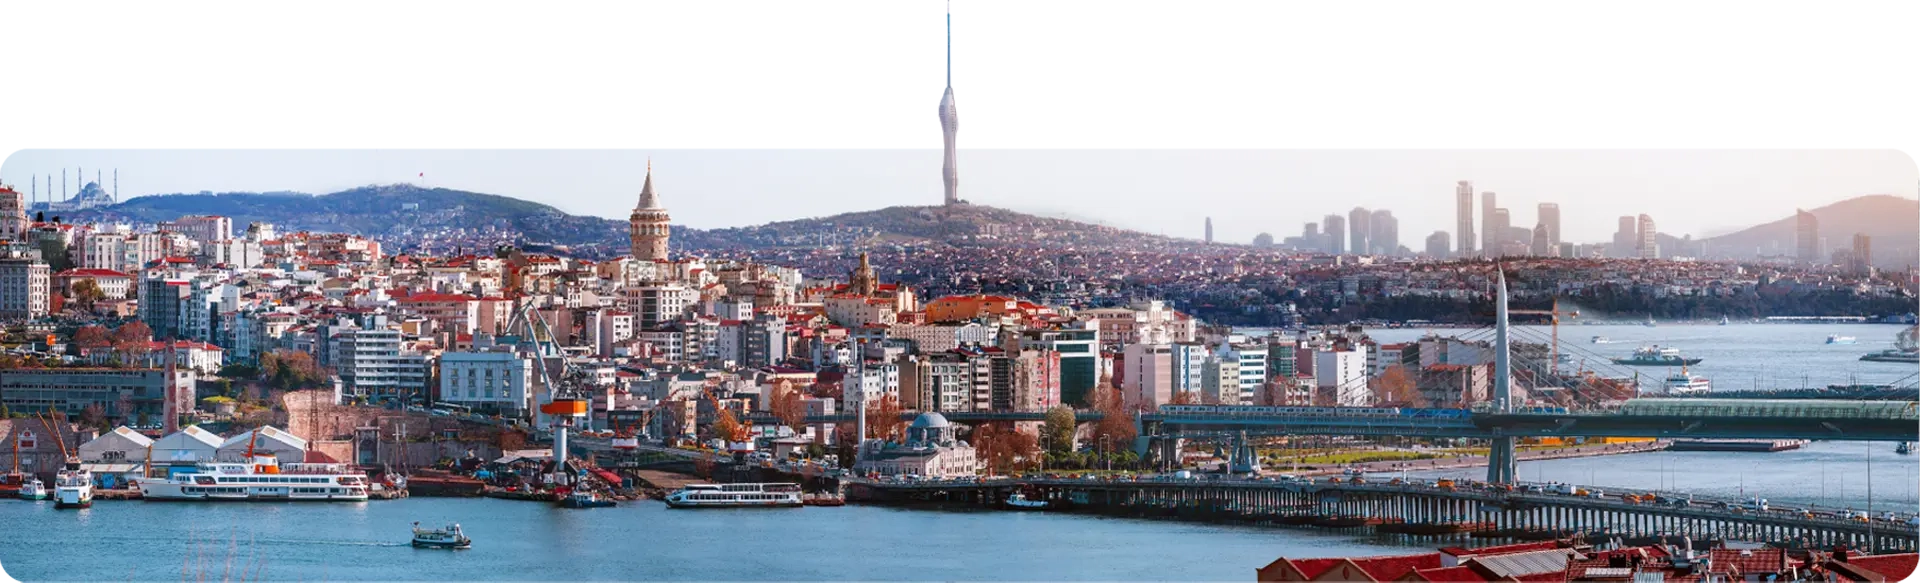 伊斯坦布尔 2 马达房地产